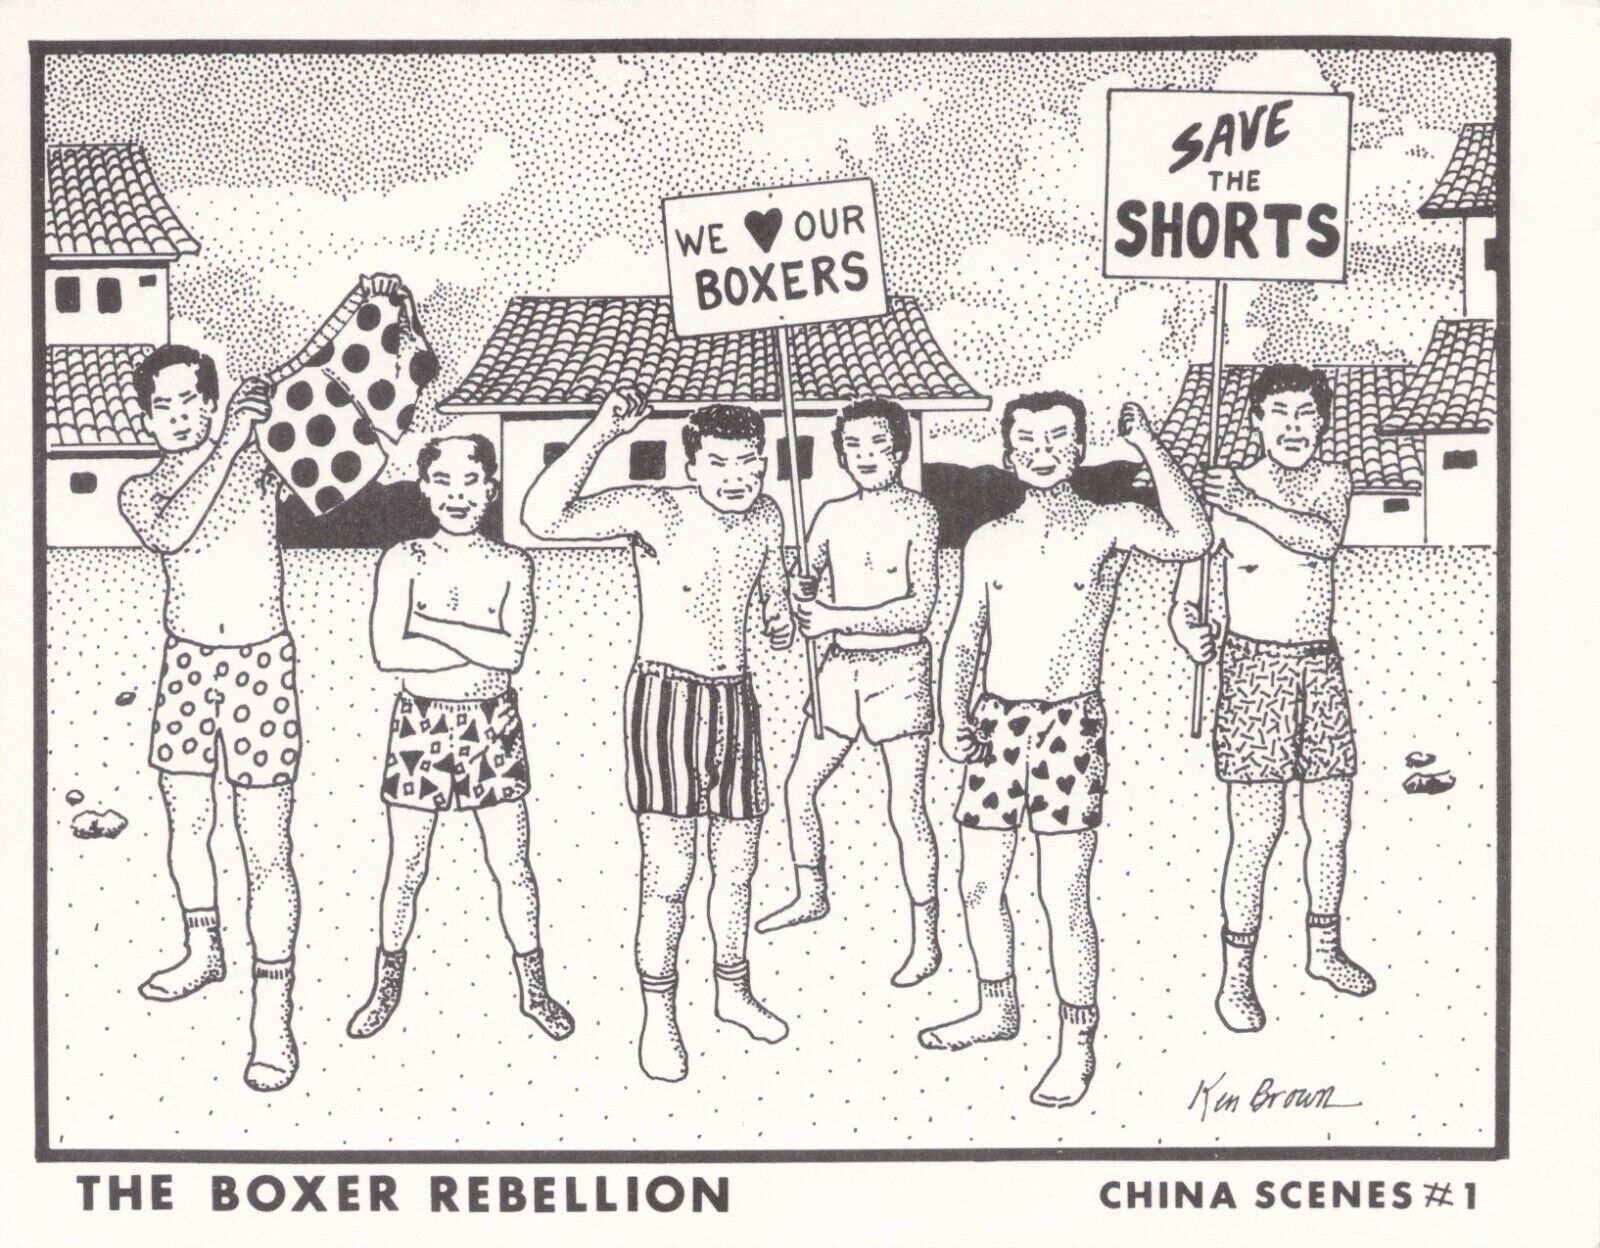 1985 Ken Brown Signed The Boxer Rebellion China Scenes #1 Retro Humor Postcard